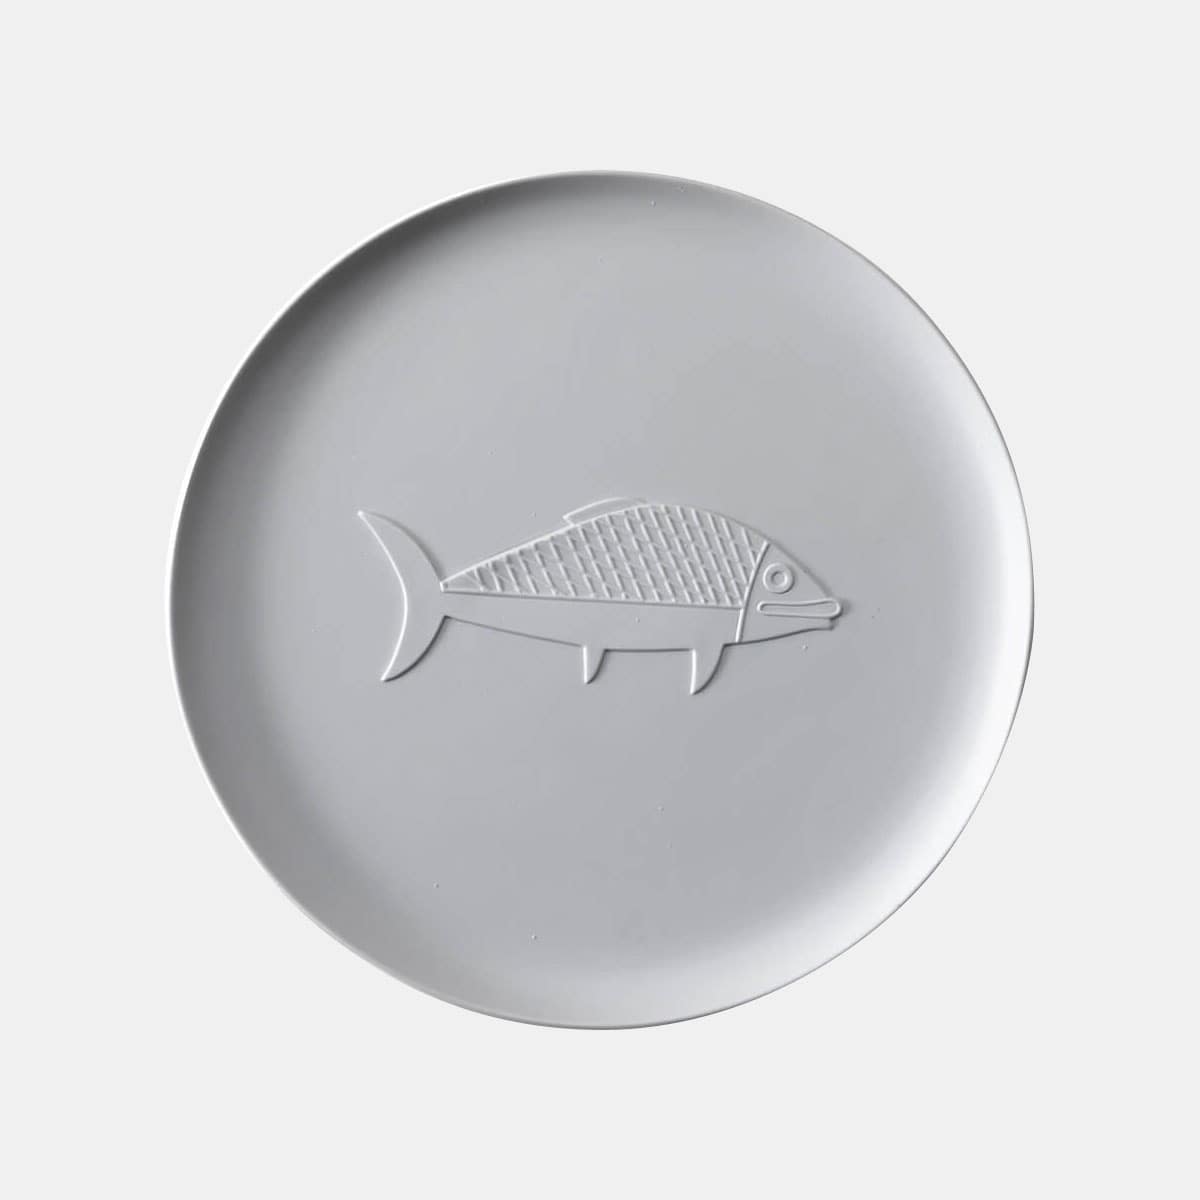 cassina-le-corbusier-richard-ginori-collection-chandigarh-poisson-001shop